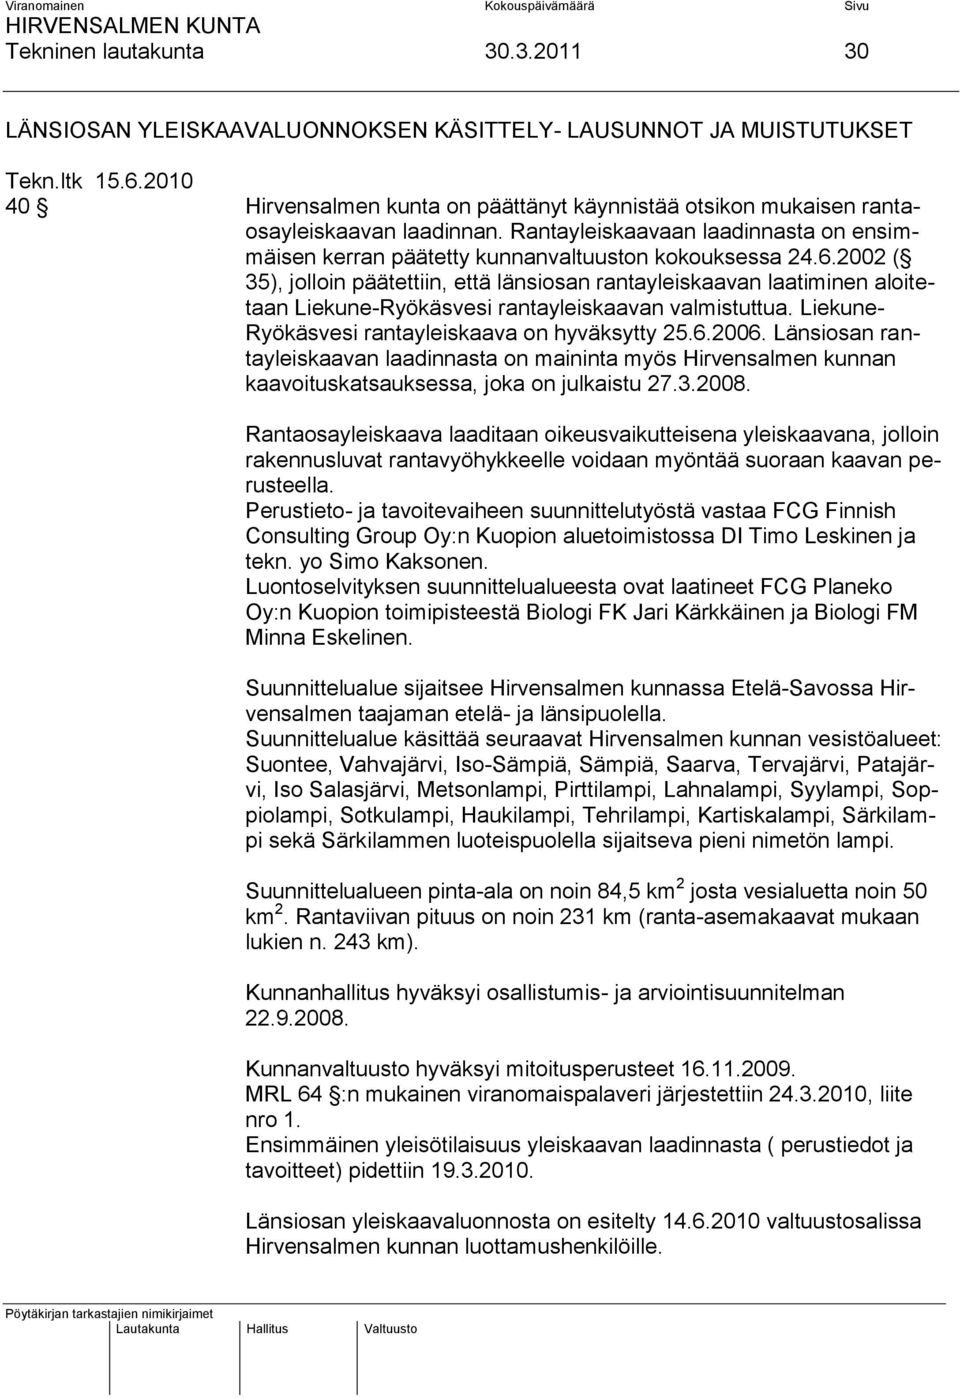 2002 ( 35), jolloin päätettiin, että länsiosan rantayleiskaavan laatiminen aloitetaan Liekune-Ryökäsvesi rantayleiskaavan valmistuttua. Liekune- Ryökäsvesi rantayleiskaava on hyväksytty 25.6.2006.